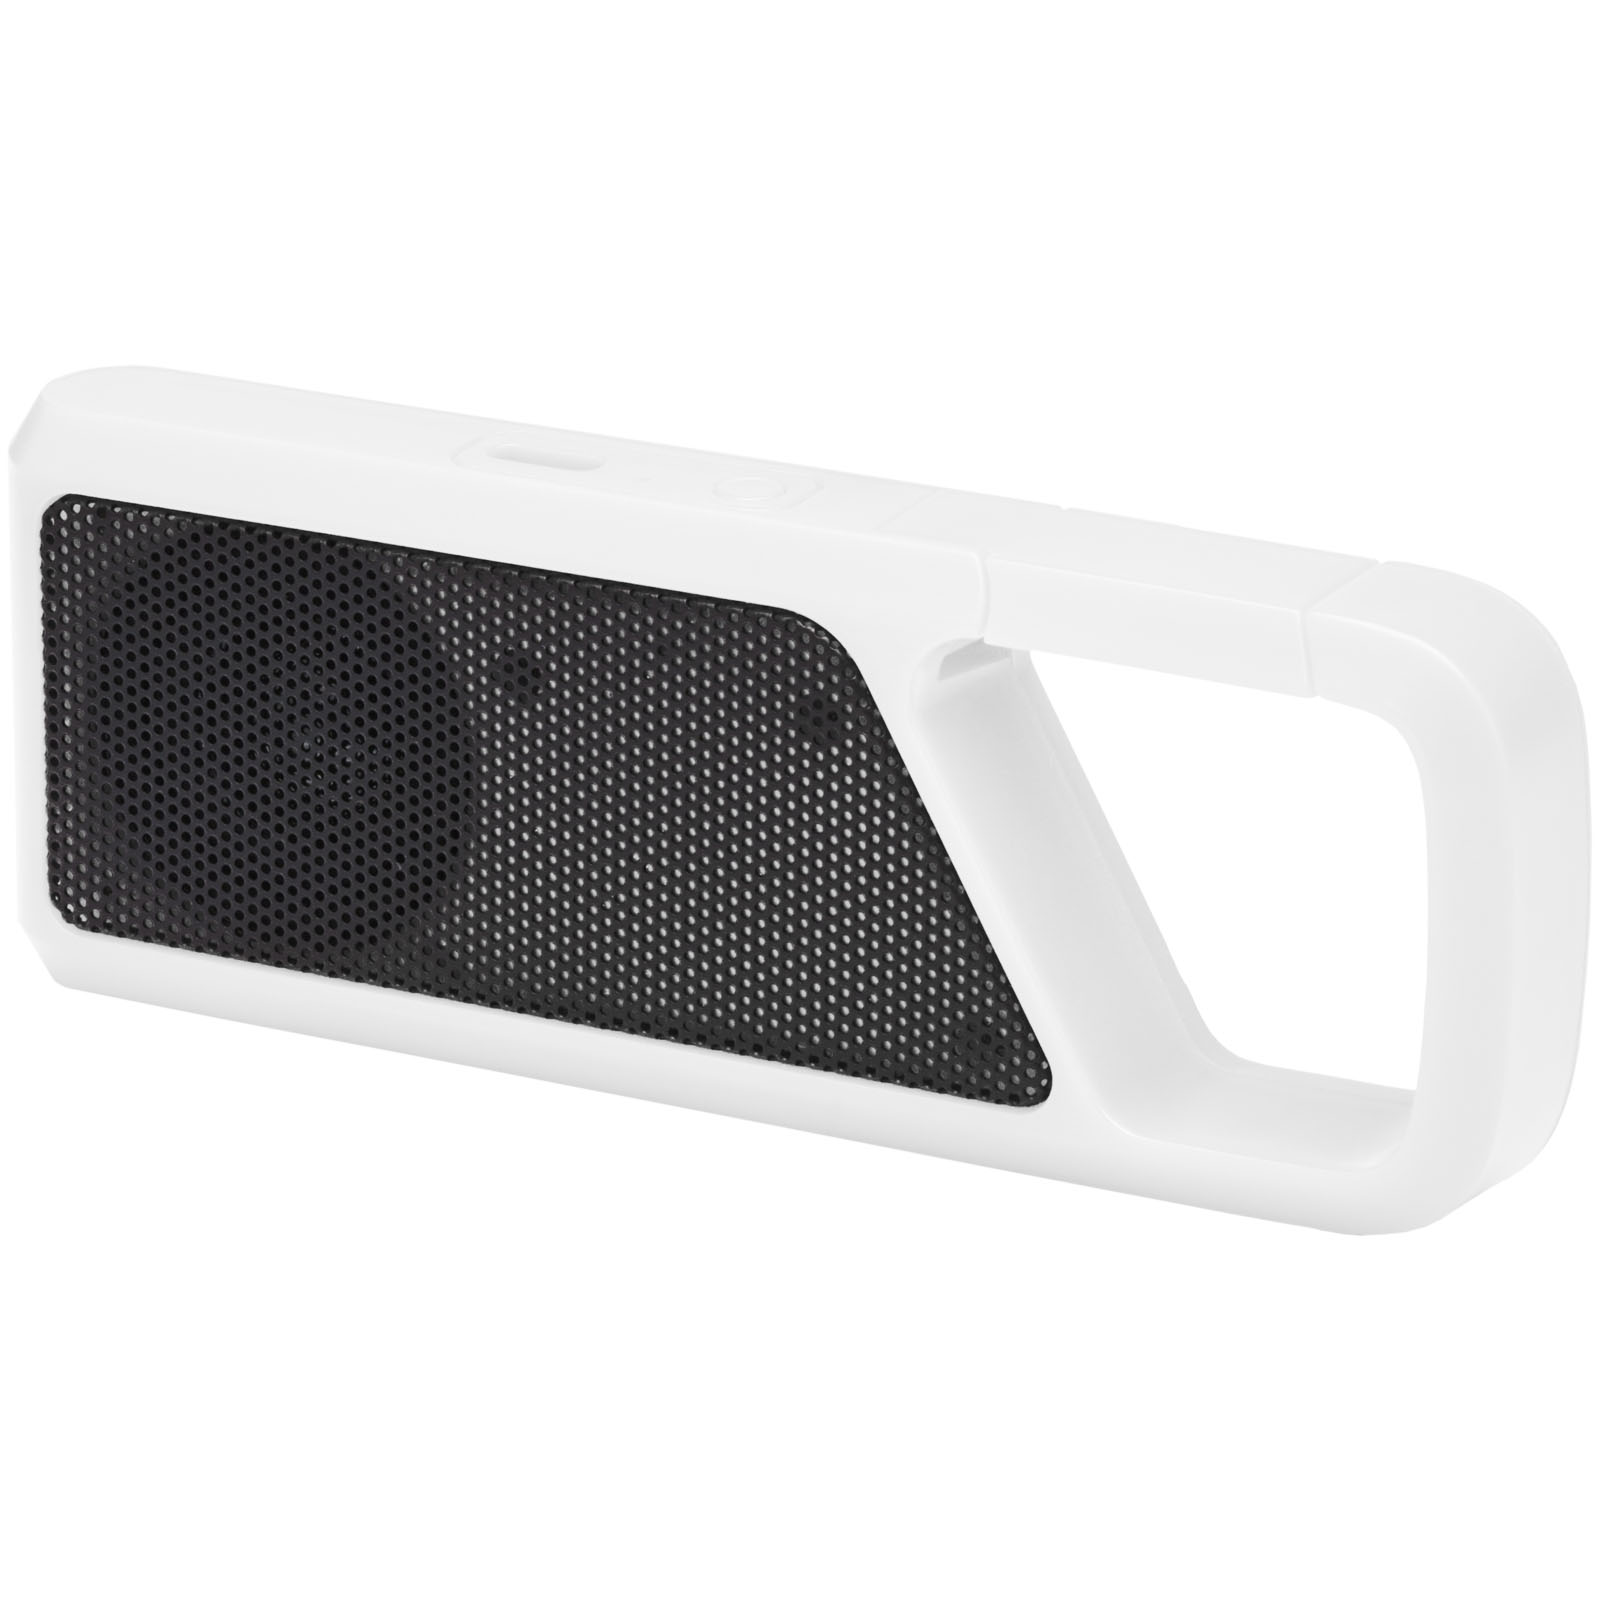 ClipSound Bluetooth Speaker - Chipping Norton - Warwick